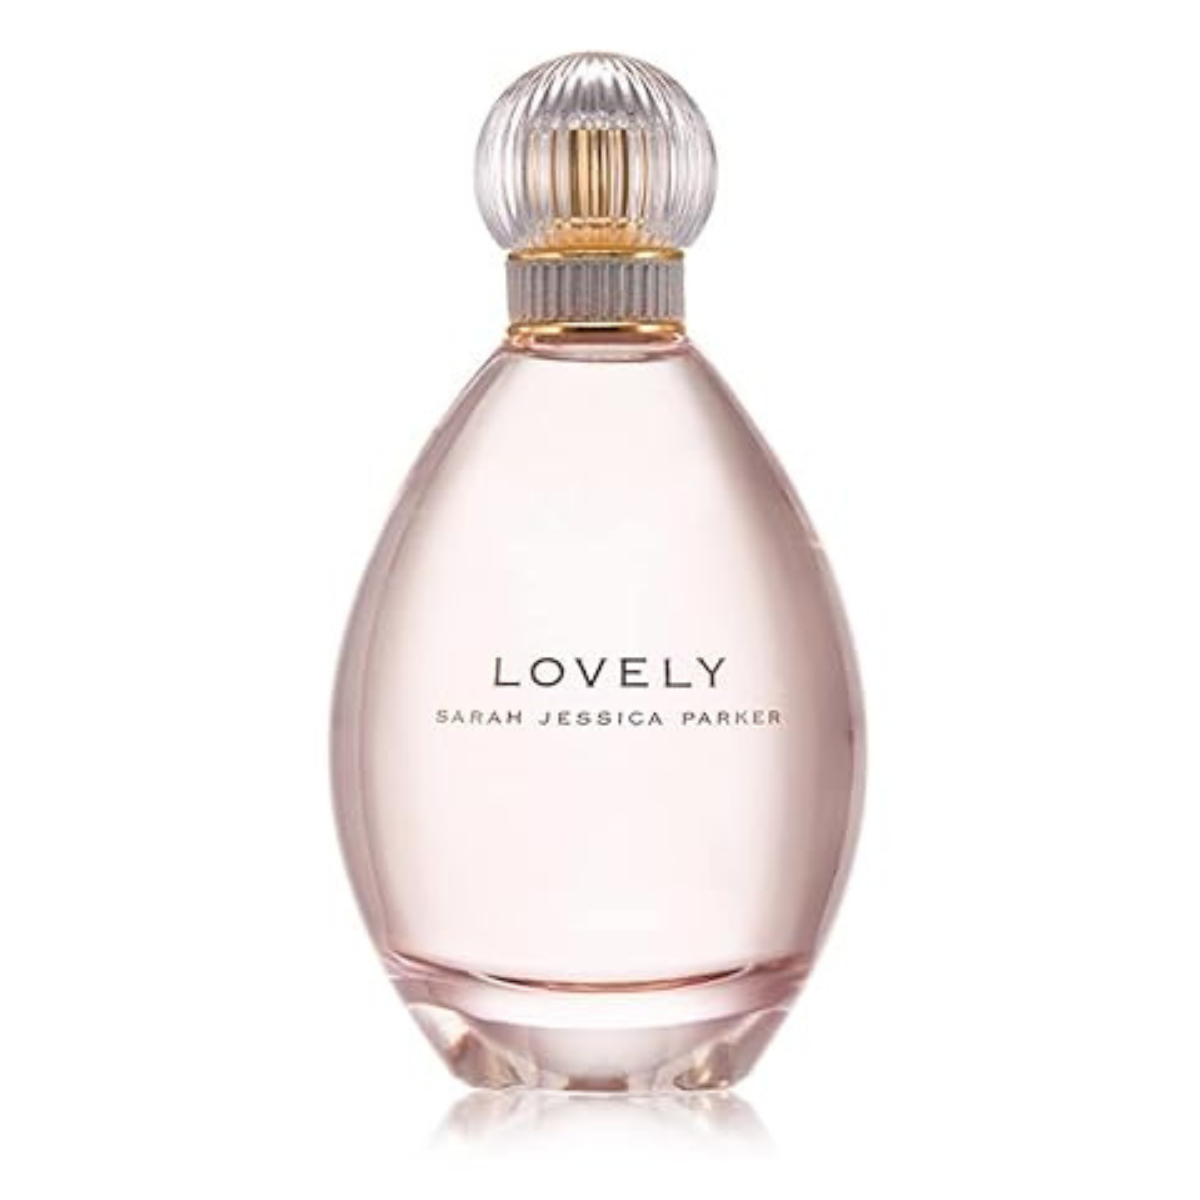 Sarah Jessica Parker Lovely 100 ml for women perfume